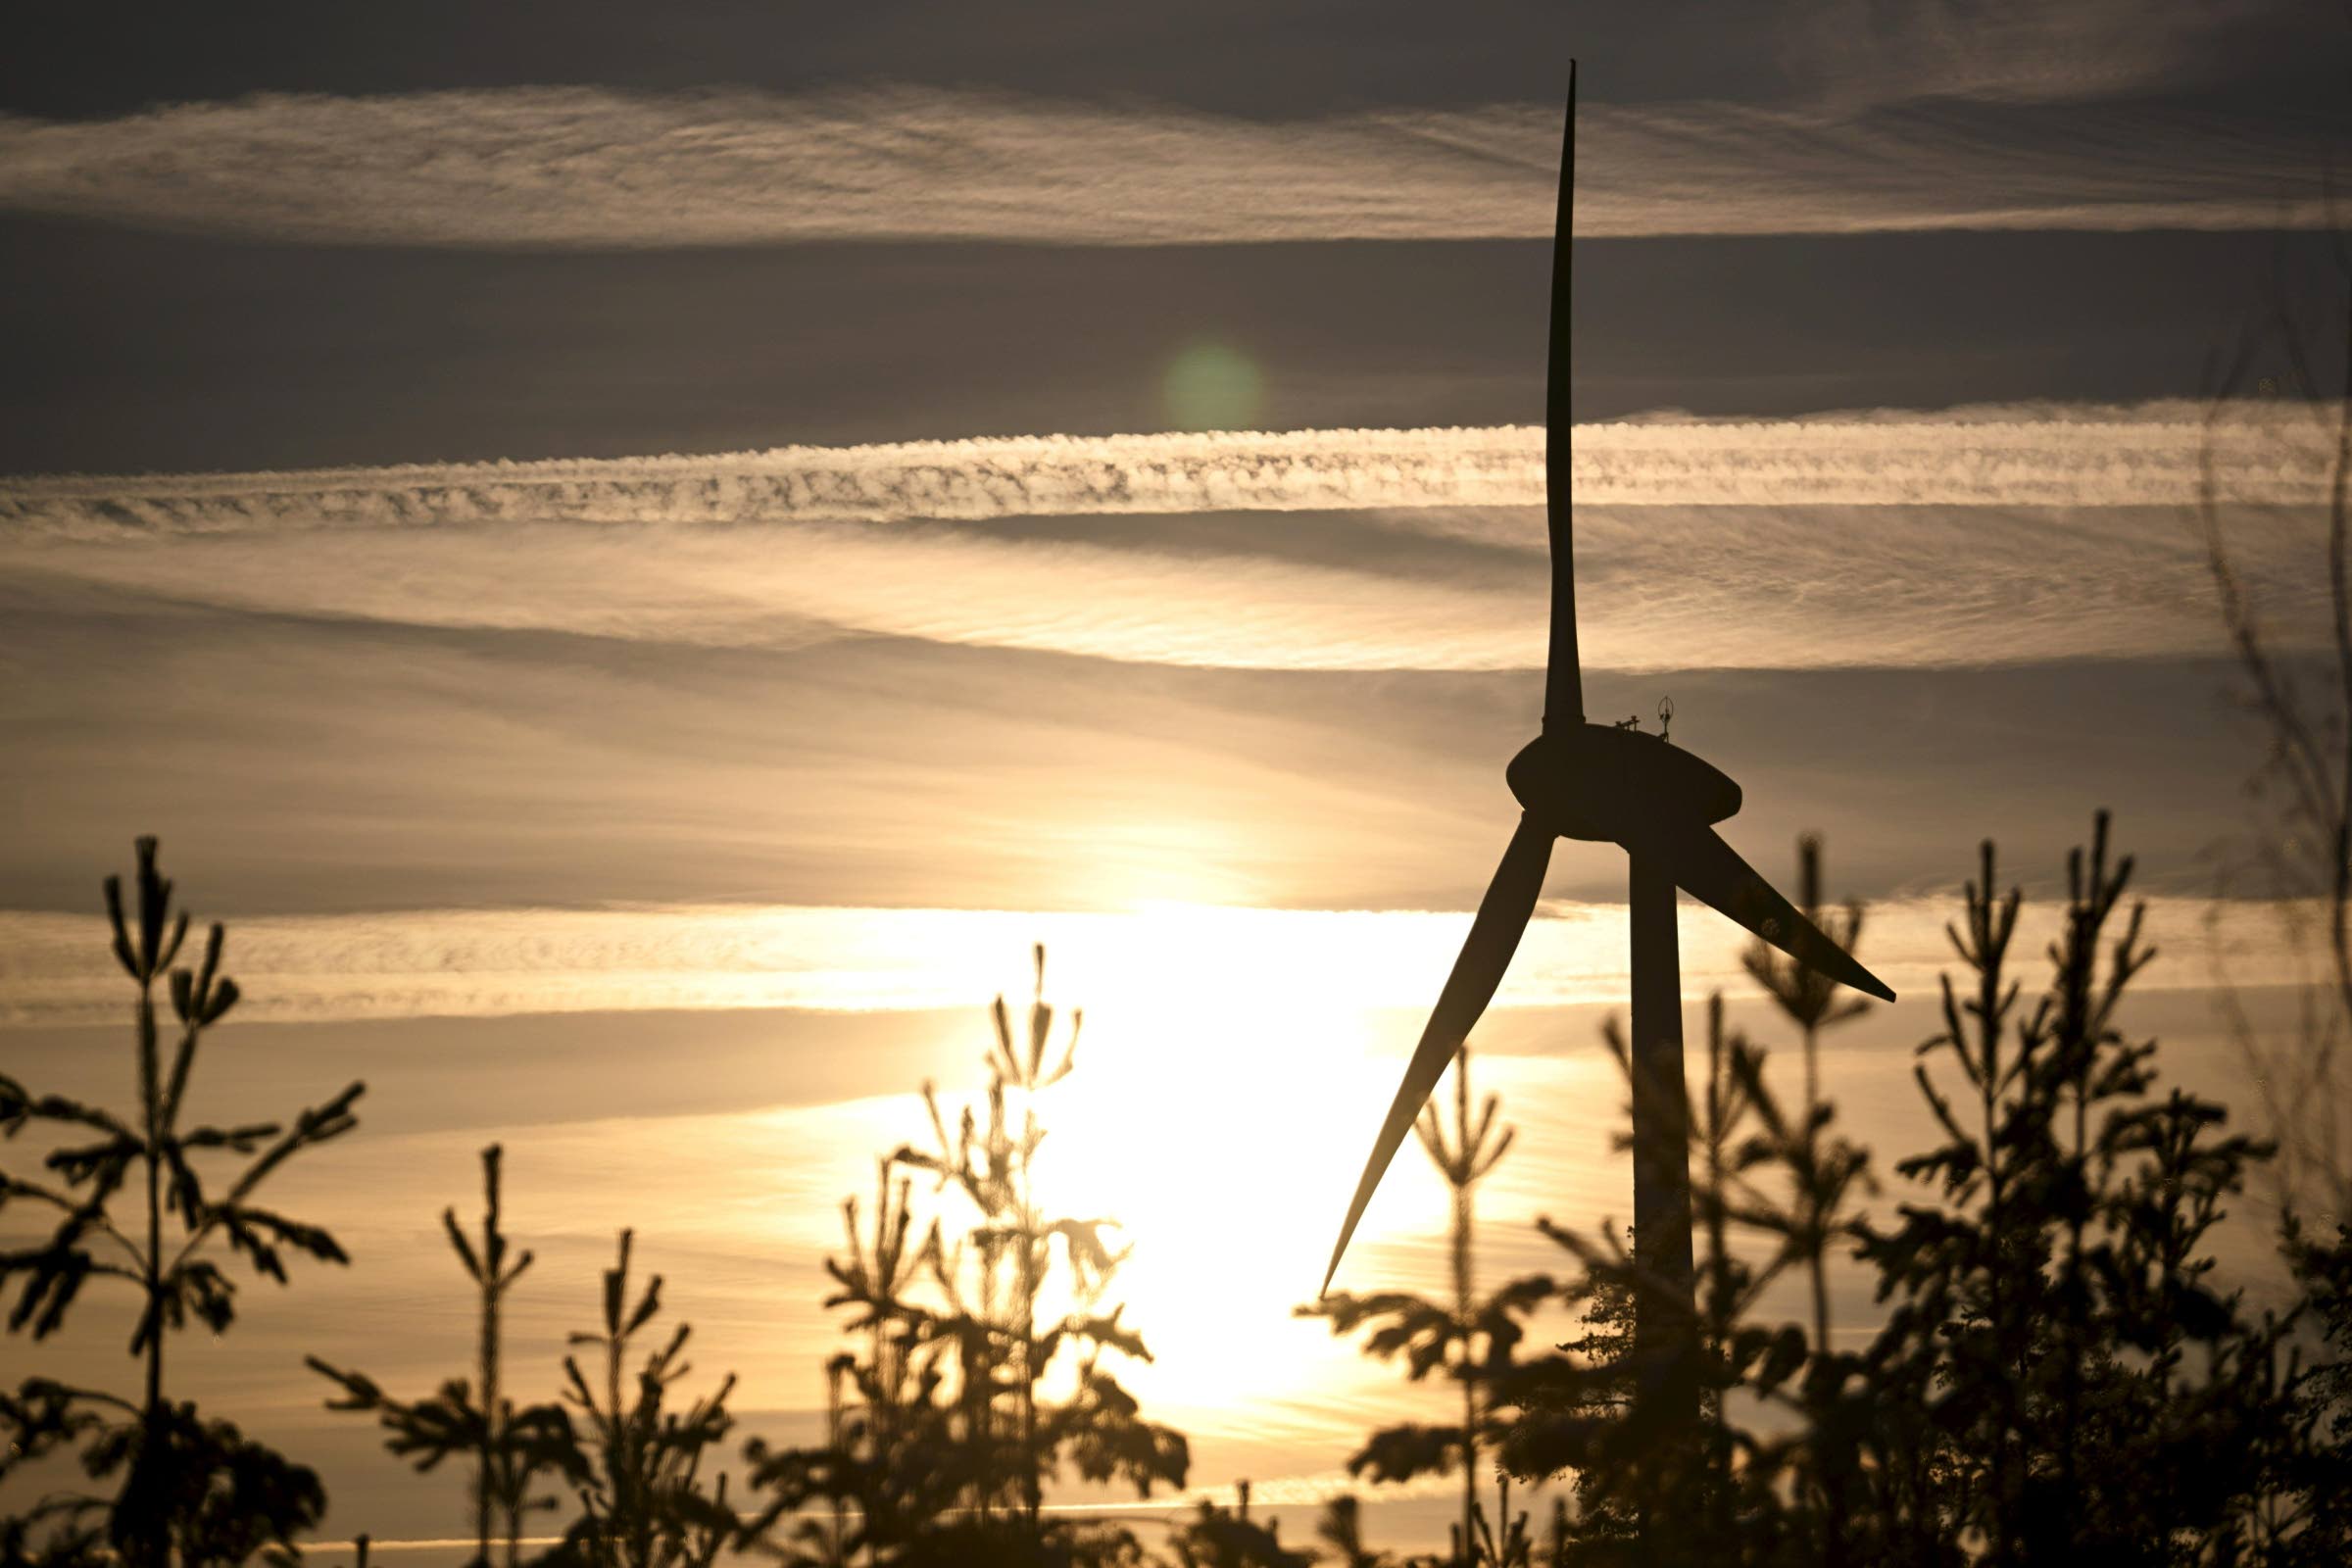 Tuulivoima toi Suomelle 2,9 miljardin investoinnit viime vuonna,  lisäkapasiteetti vastasi lähes kahta Olkiluoto 3:a – KU